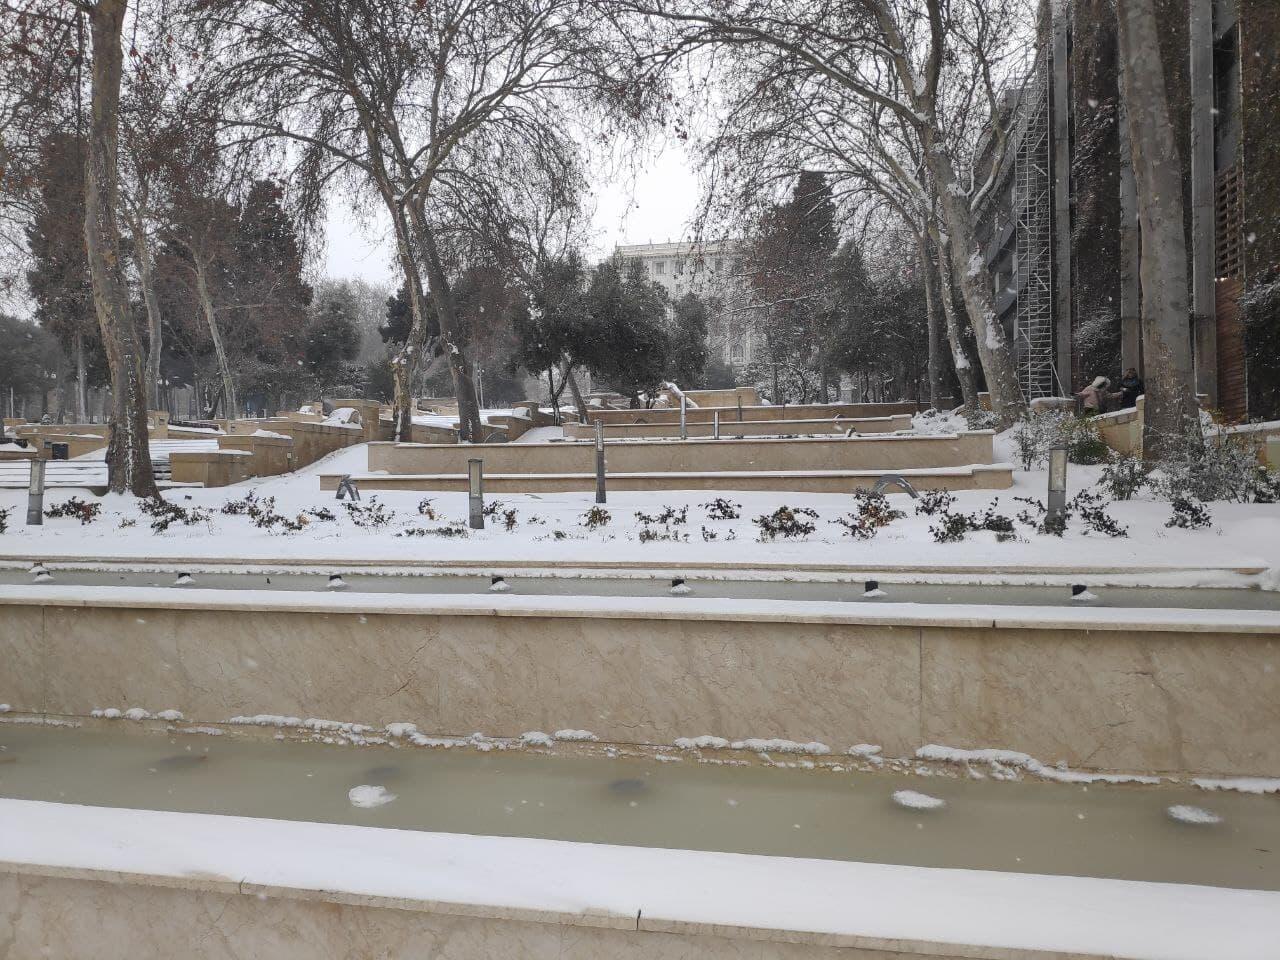 "Торговая" и площадь фонтанов в снегу